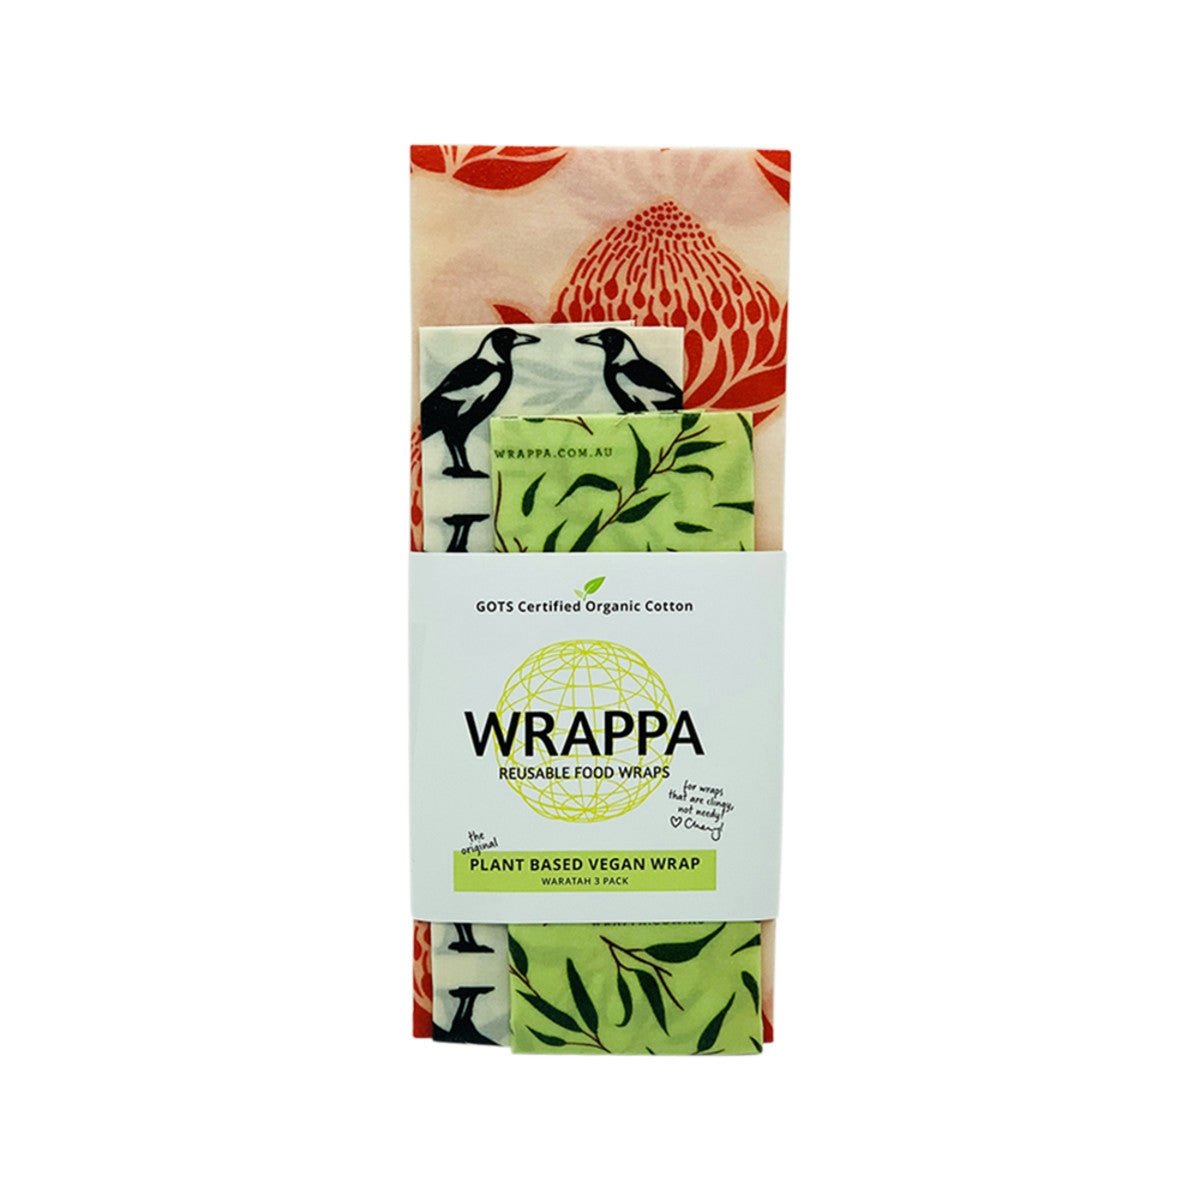 image of WRAPPA Reusable Food Wrap Vegan Waratah x 3 Pack on white background